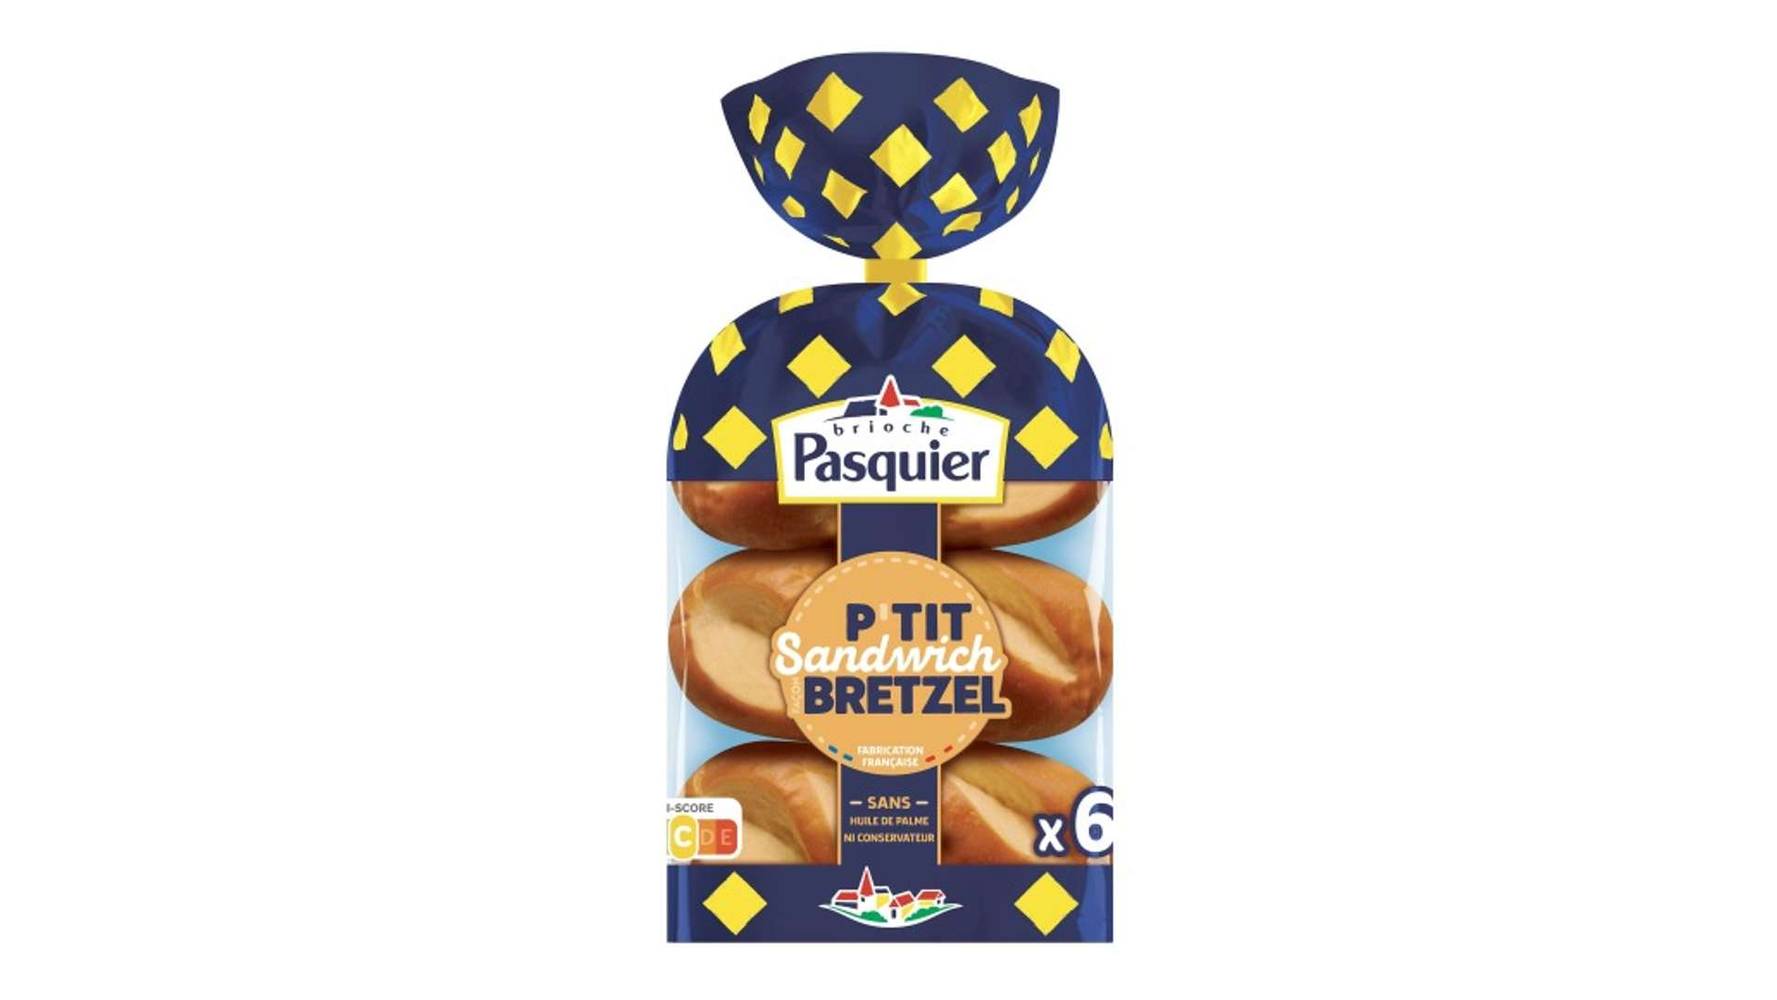 Brioche Pasquier - Petits pains sandwichs bretzel (6 pièces)